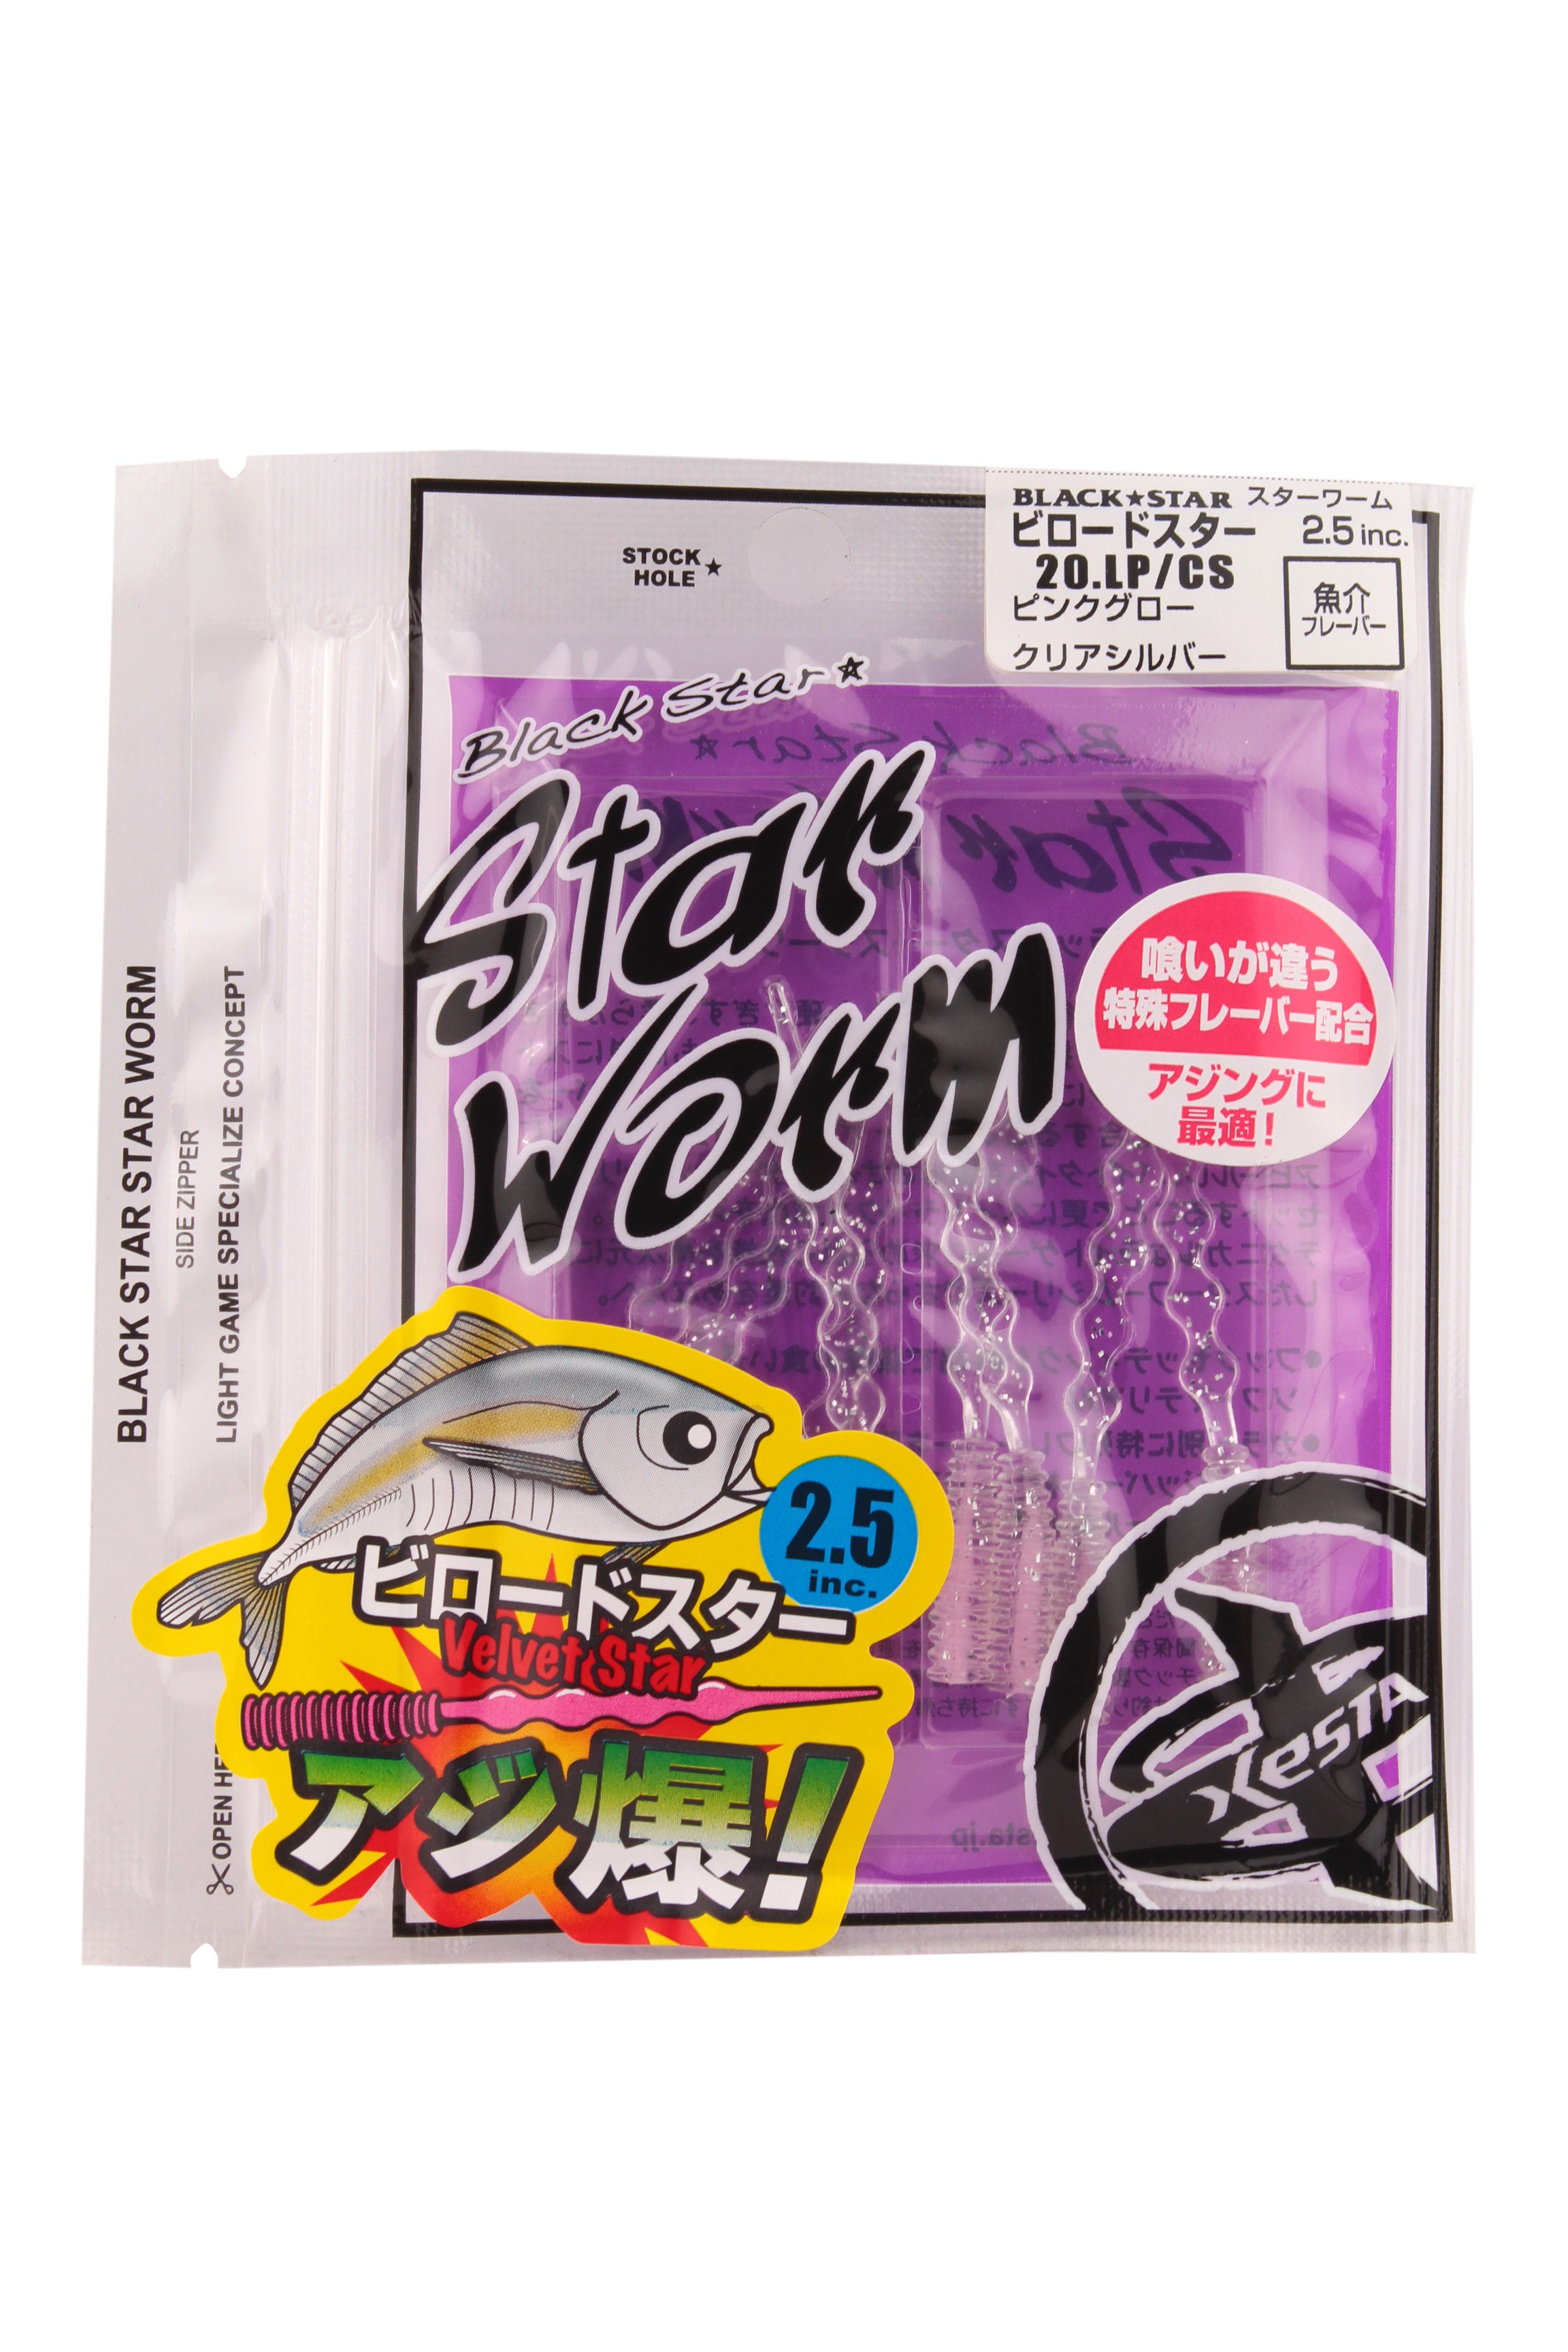 Приманка Xesta Black star worm velvet star 2,5&quot; 20.lp/cs - фото 1